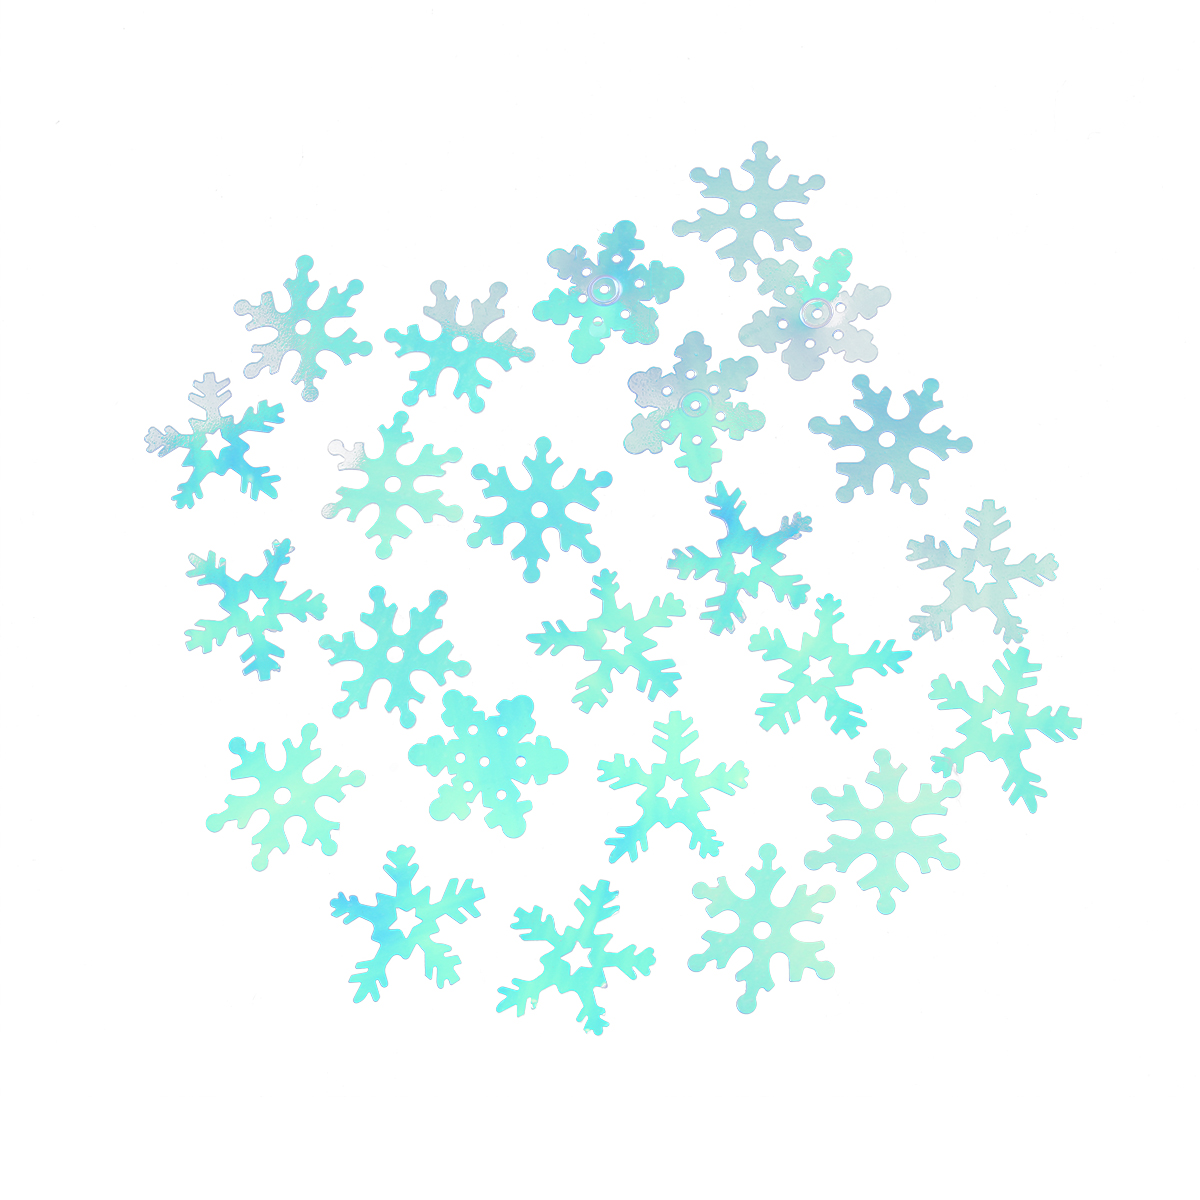 1000pcs Transparent Snowflake Confetti Christmas Party Decorations, Size: 2.5*2.5*0.2